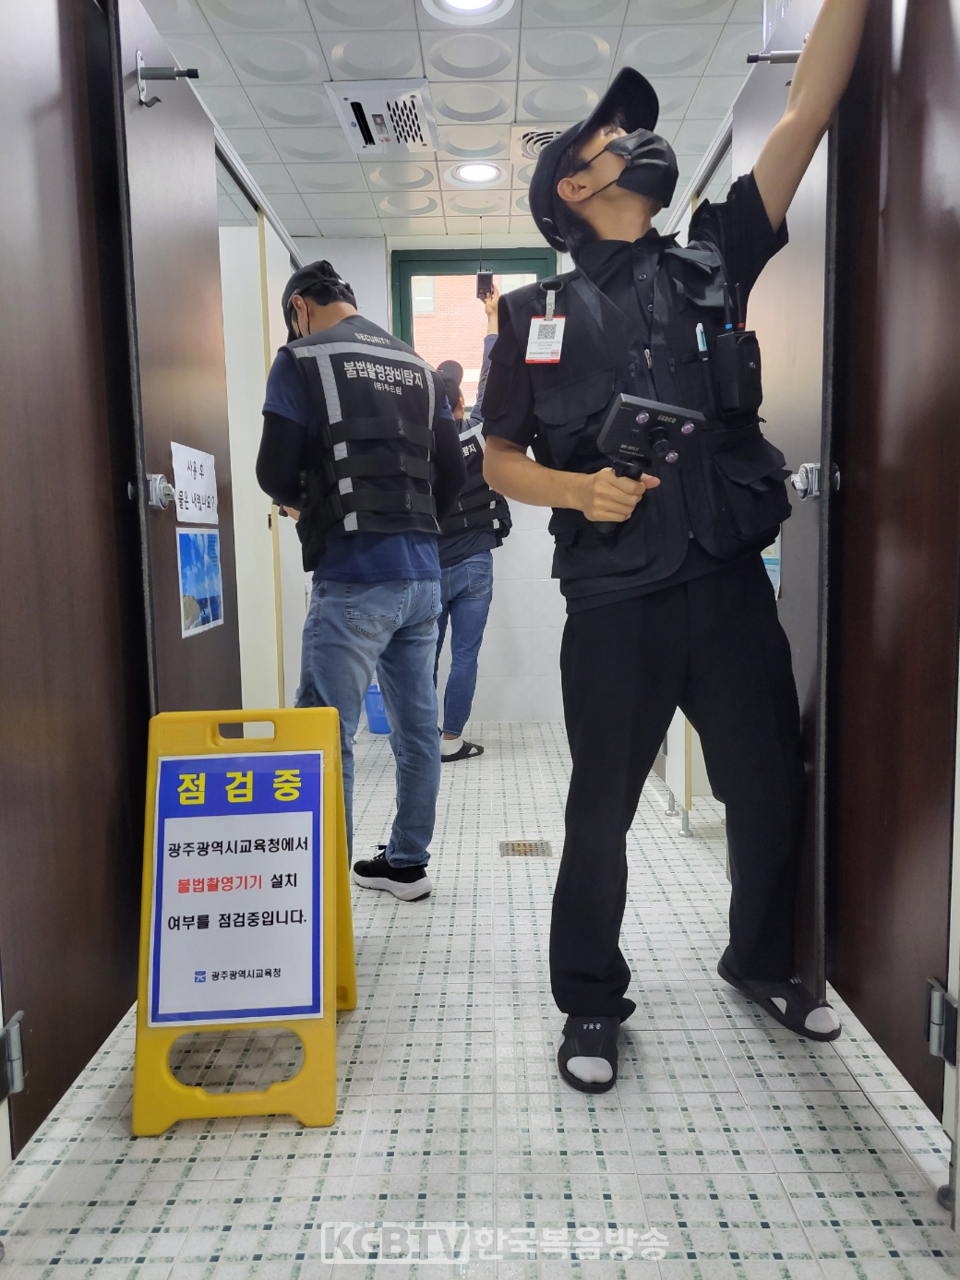  학교 내 불법 촬영 근절을 위해 불법 촬영기기 탐지 전문업체에가 점검을 하고있다.사진제공 광주광역시교육청.